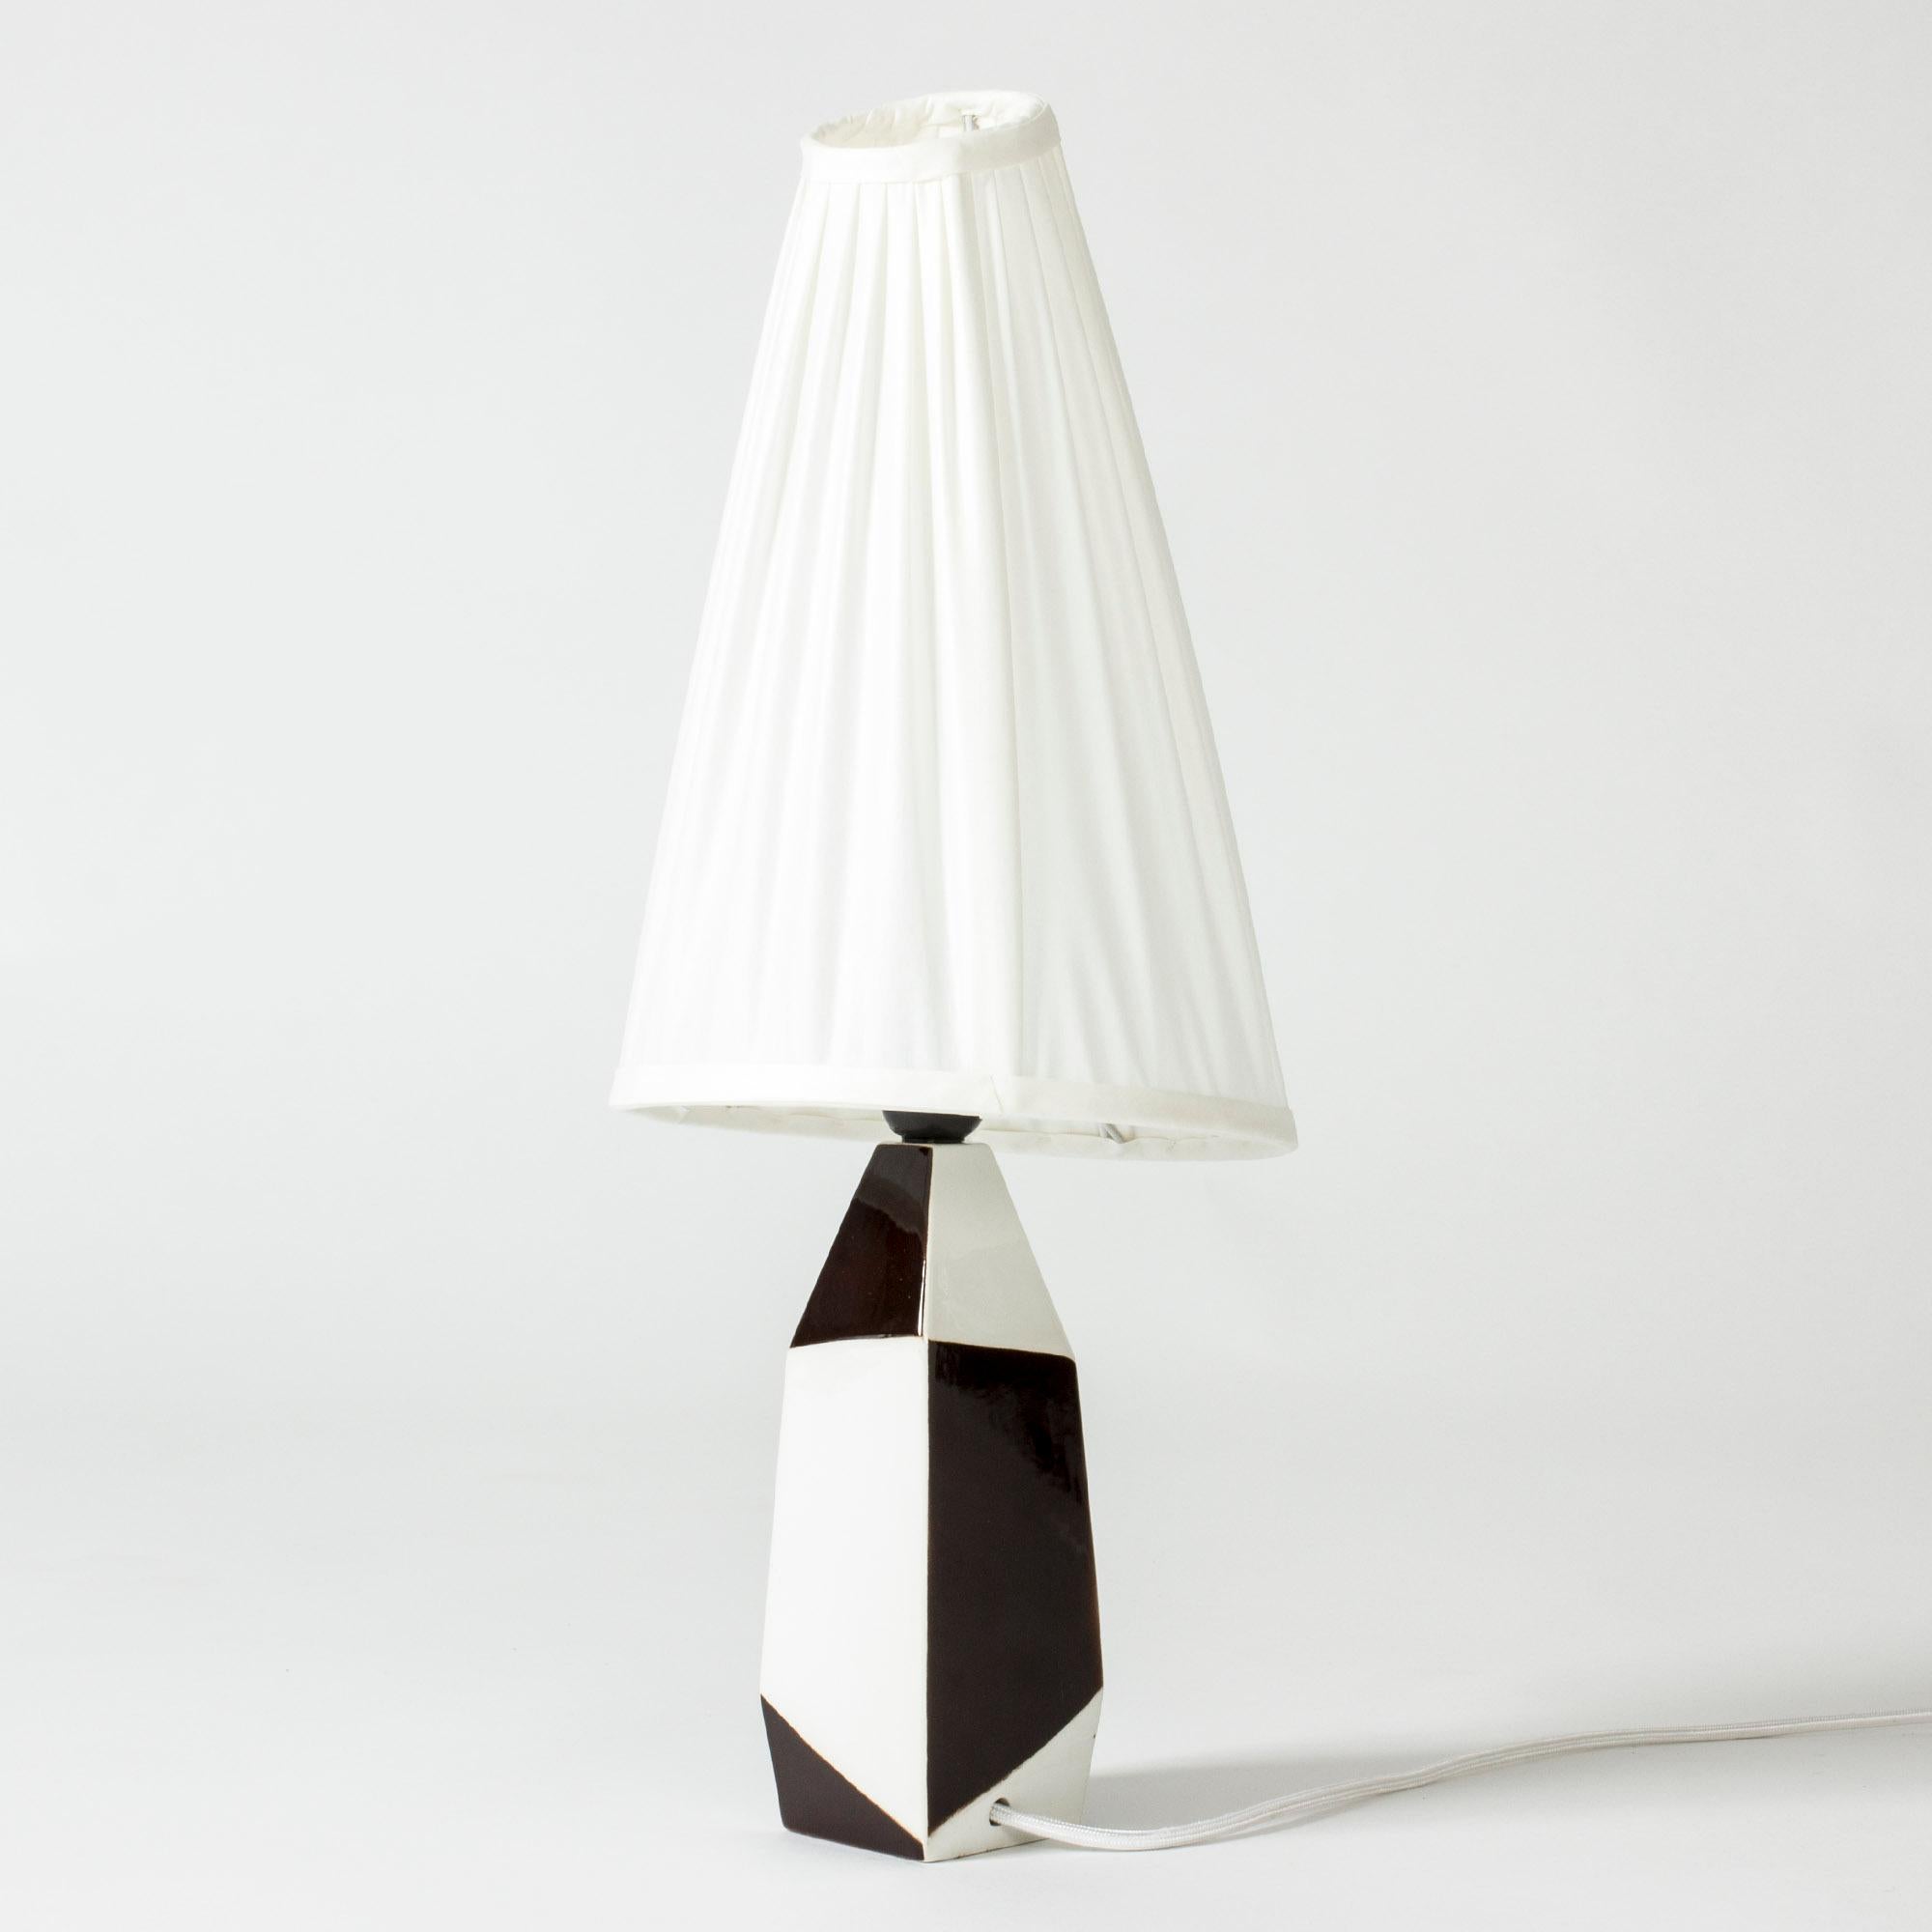 Scandinavian Modern Table Lamp by Carl-Harry Stålhane for Rörstrand, Sweden, 1950s